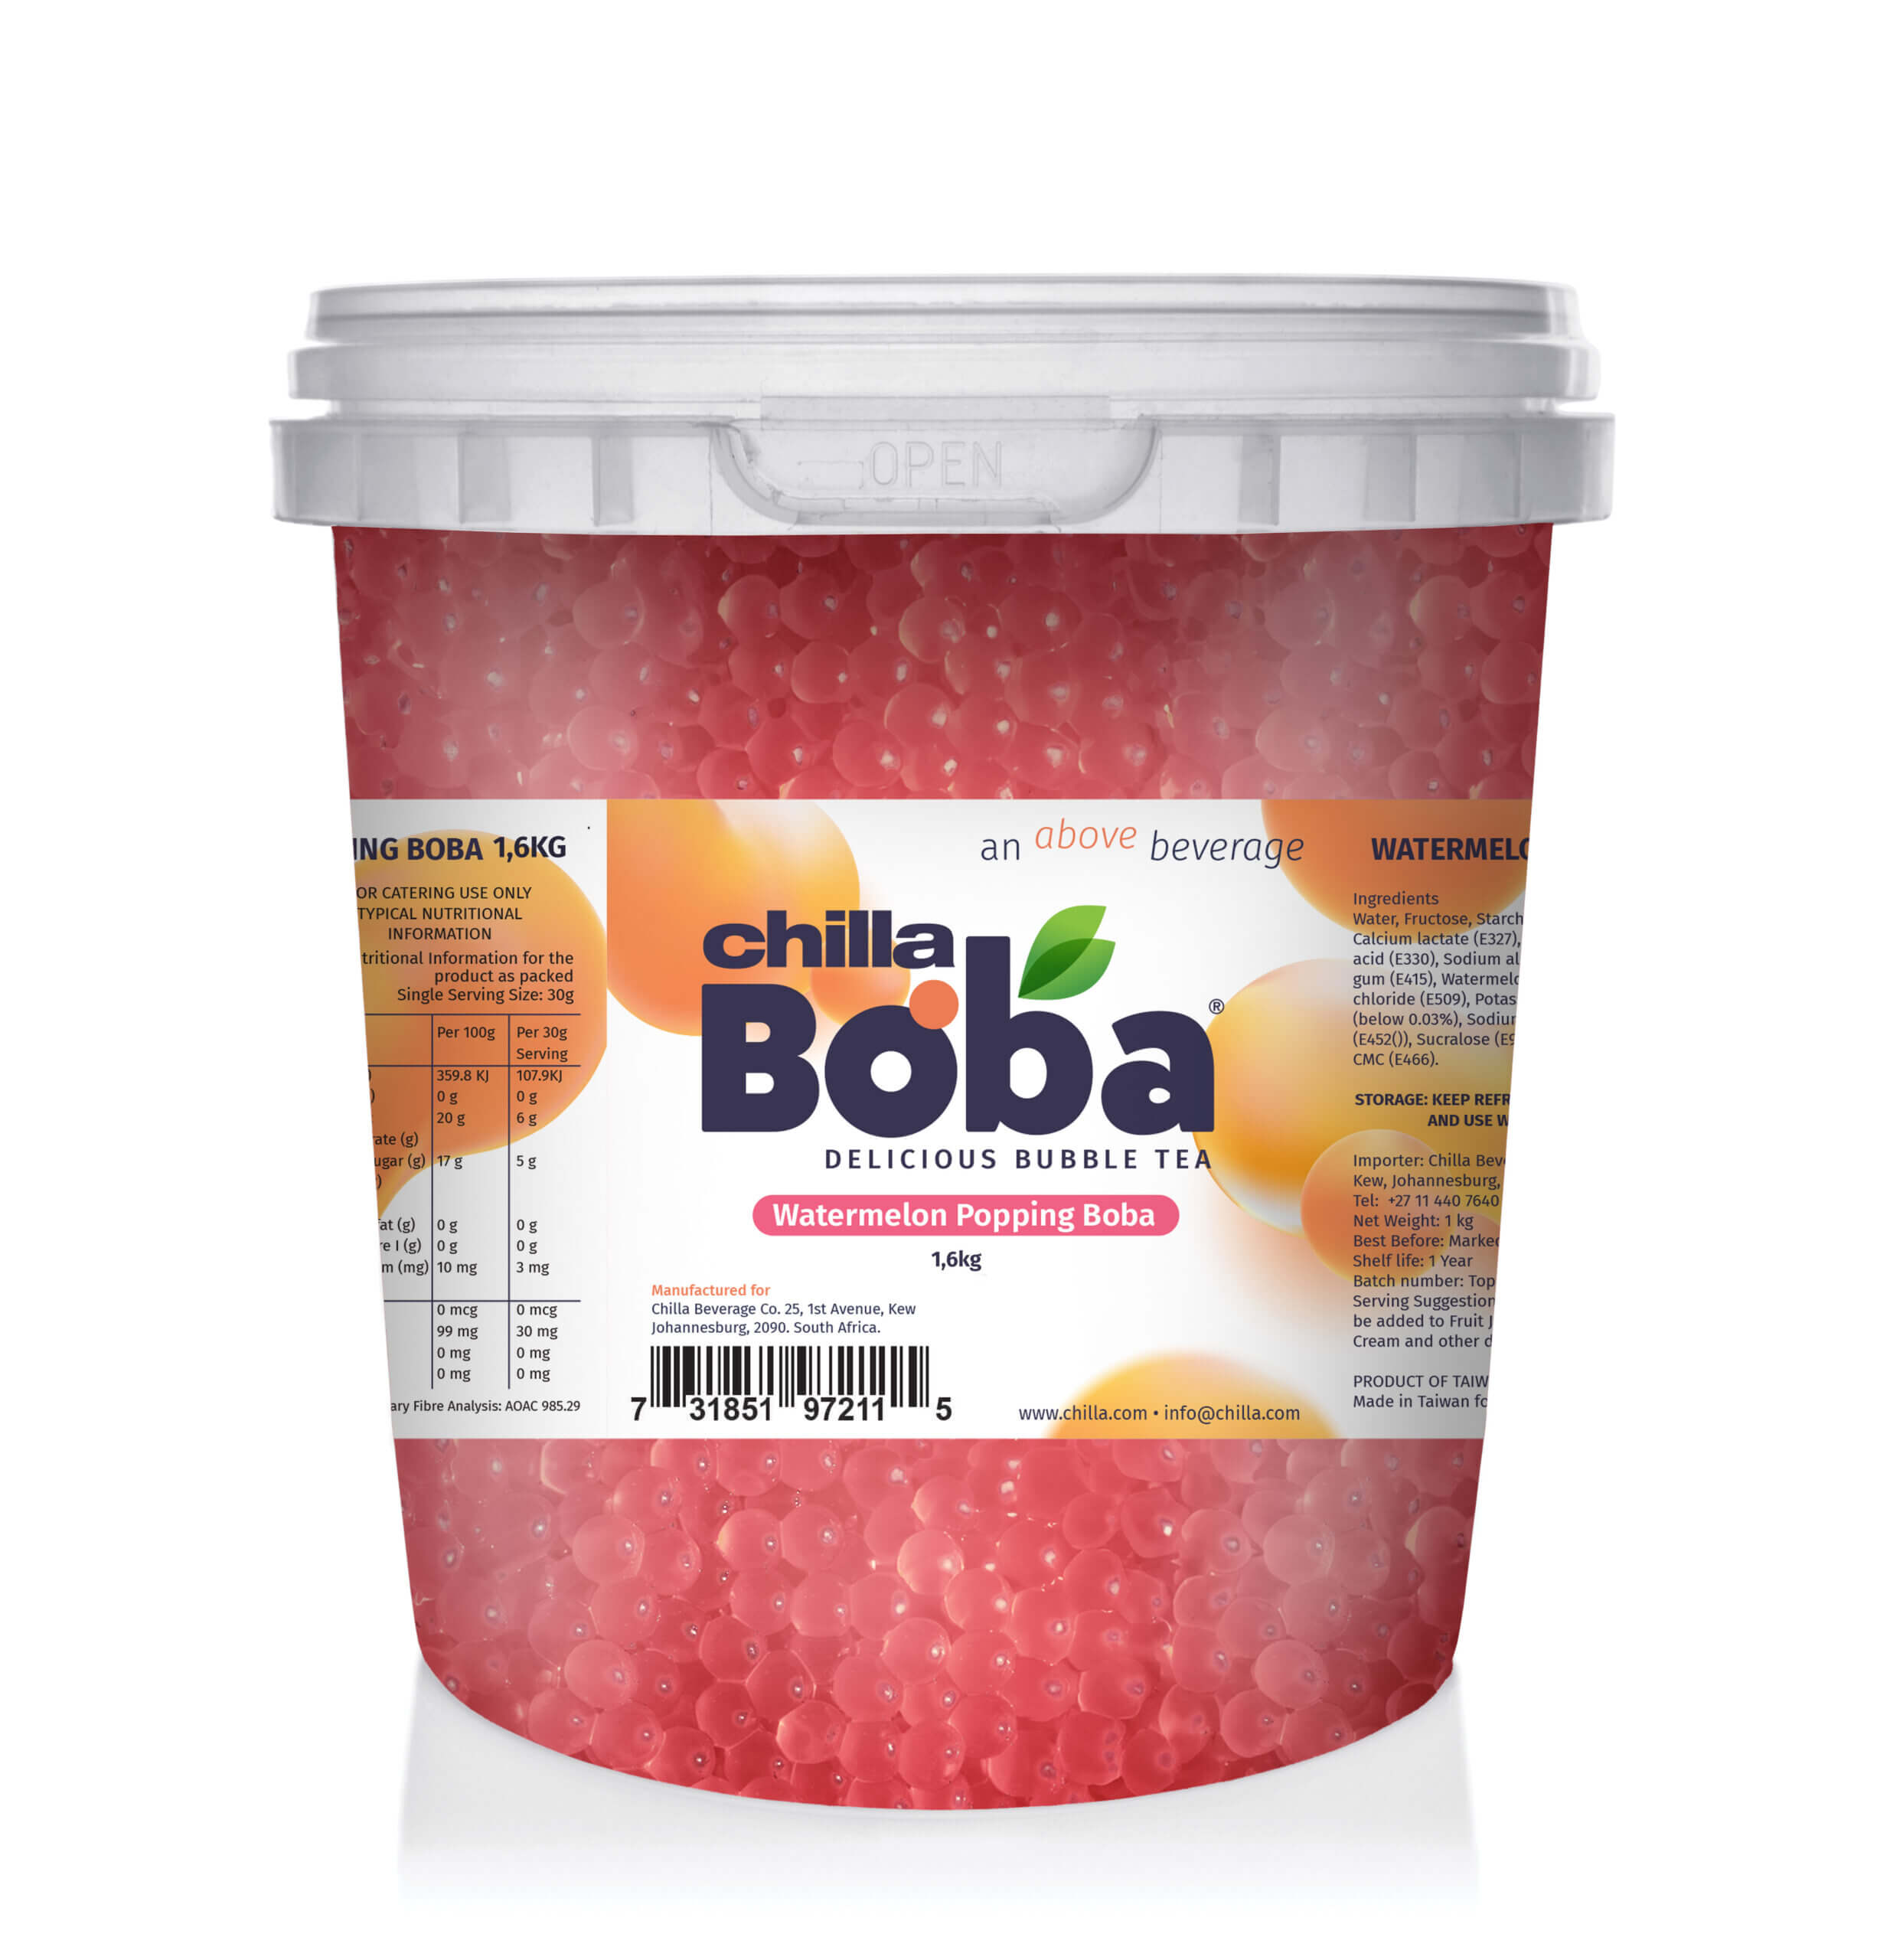 Watermelon Popping Boba 1.6kg | Not Kosher